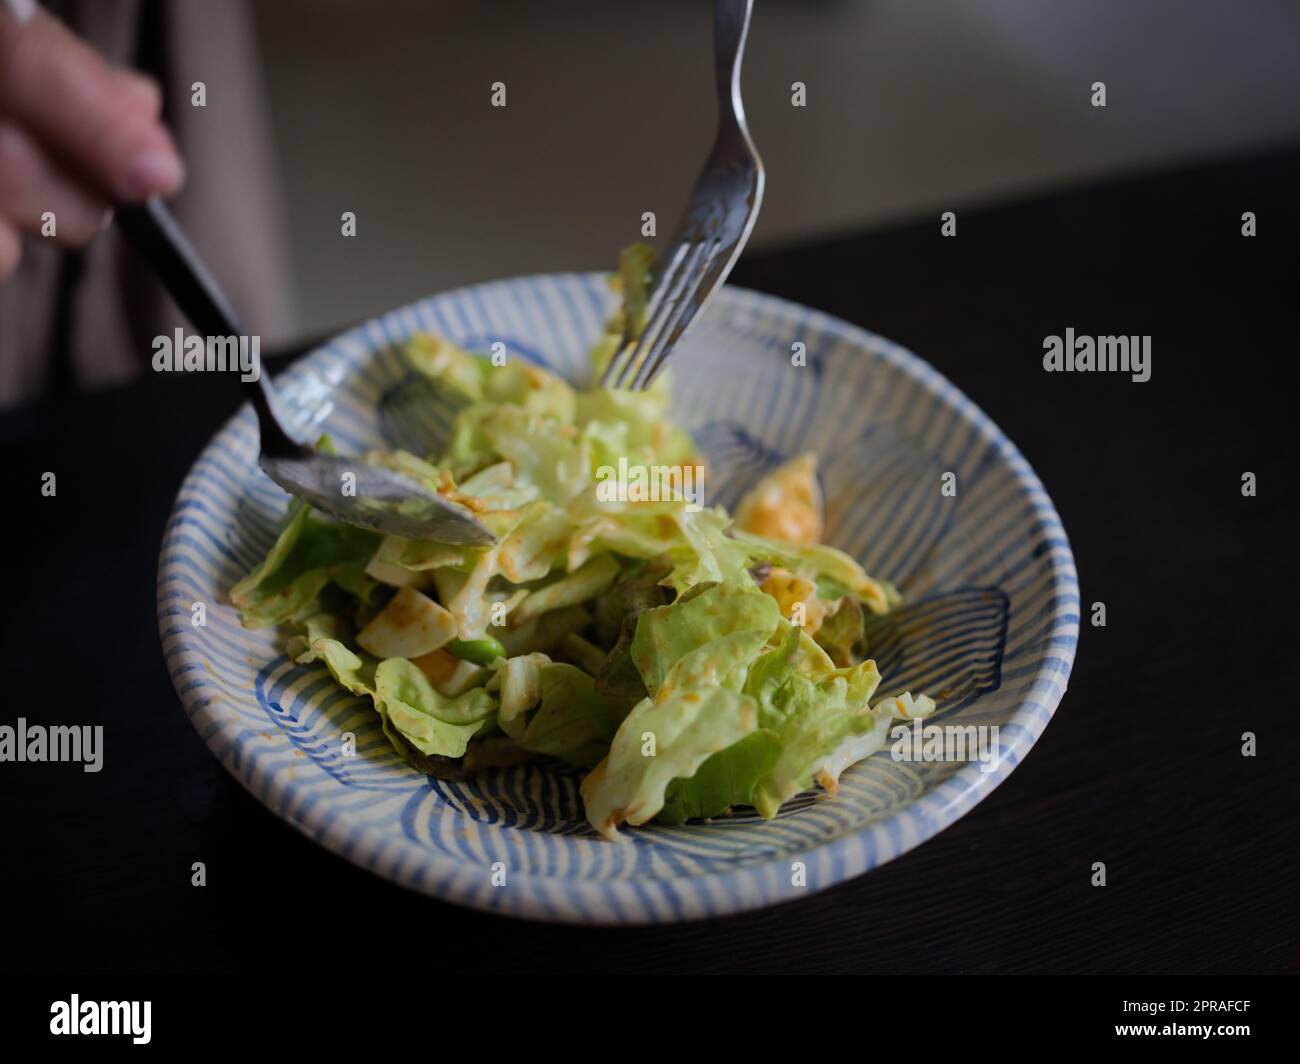 Donna che mescola deliziosi ingredienti per insalata alimentare con cucchiai in cucina Foto Stock